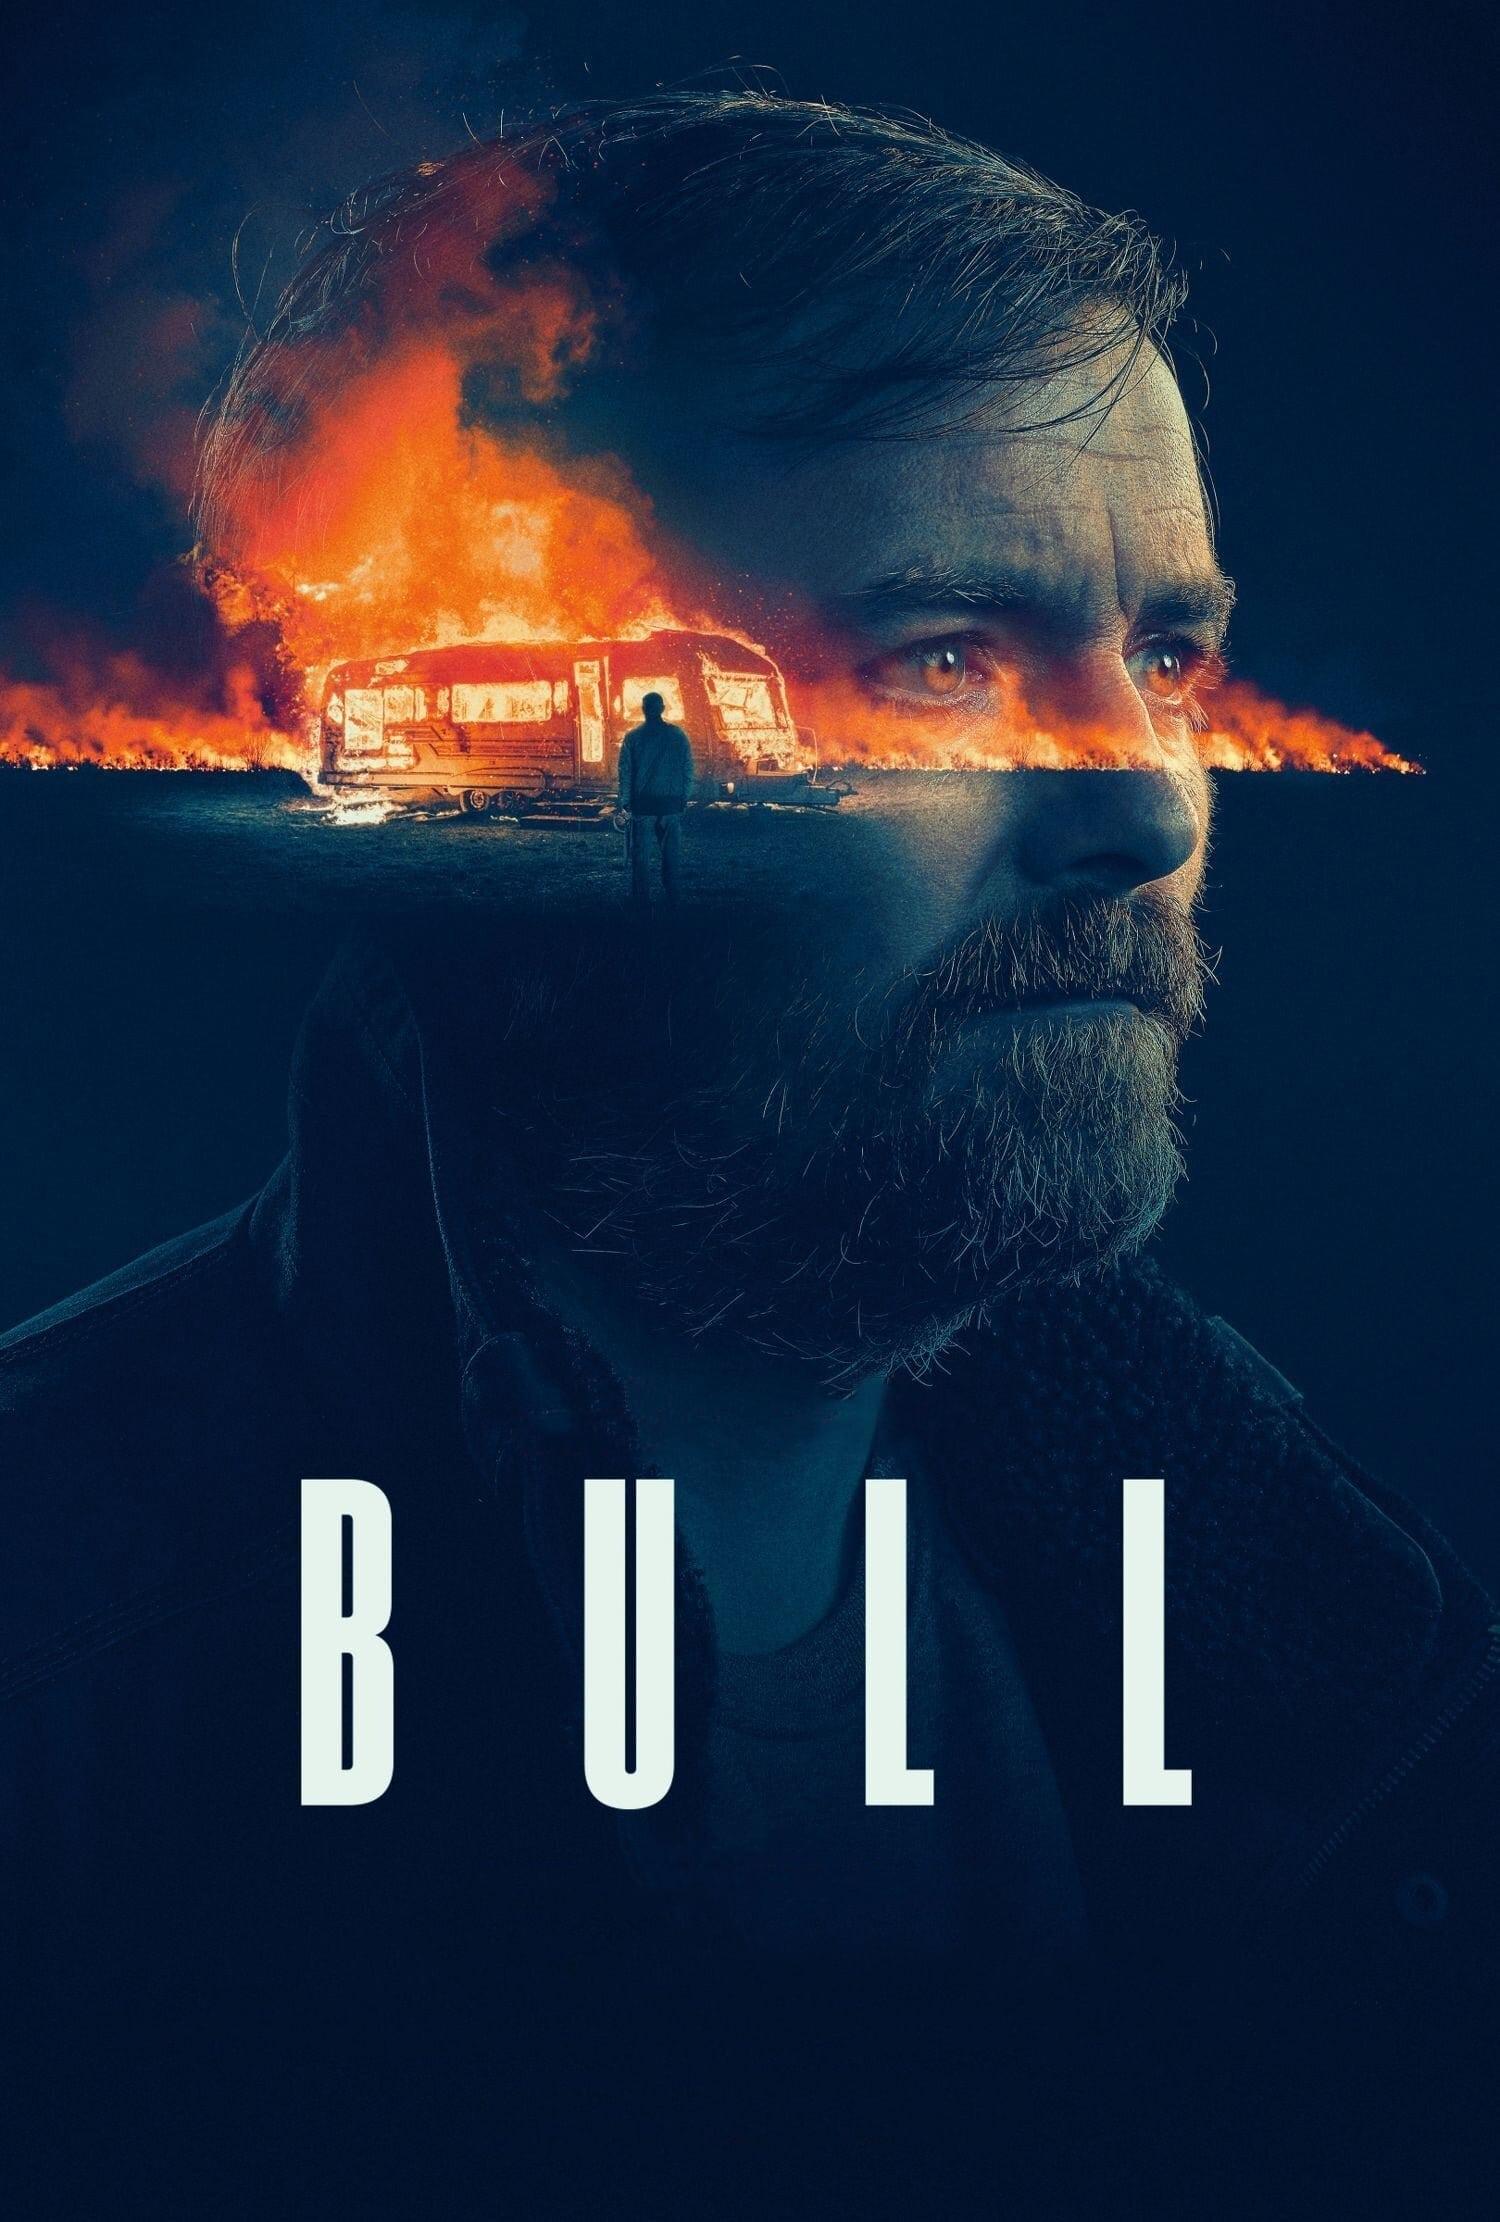 Bull poster